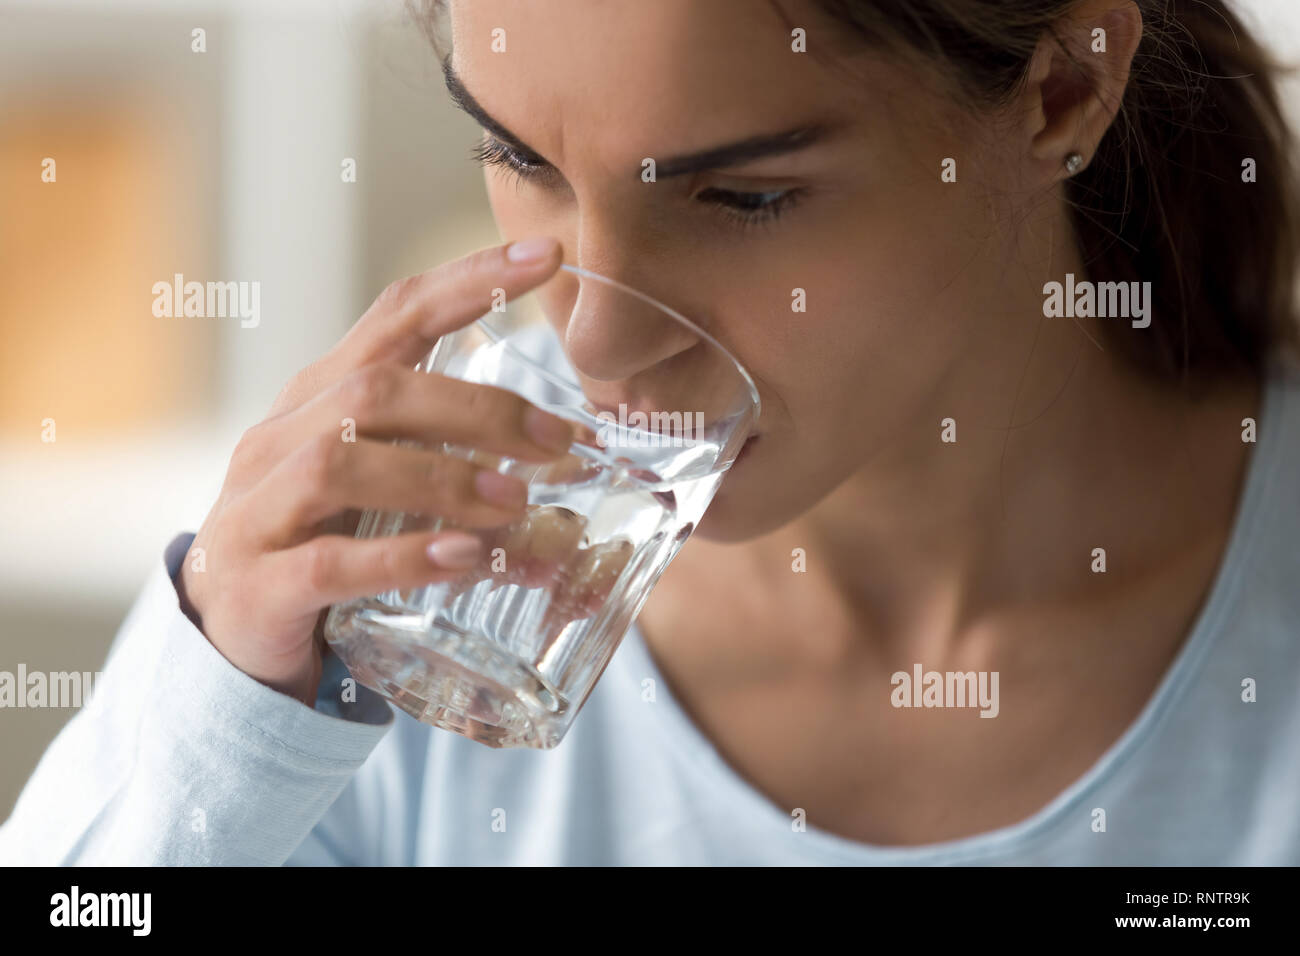 Nahaufnahme der weiblichen Gesichts holding Glas Wasser Stockfoto